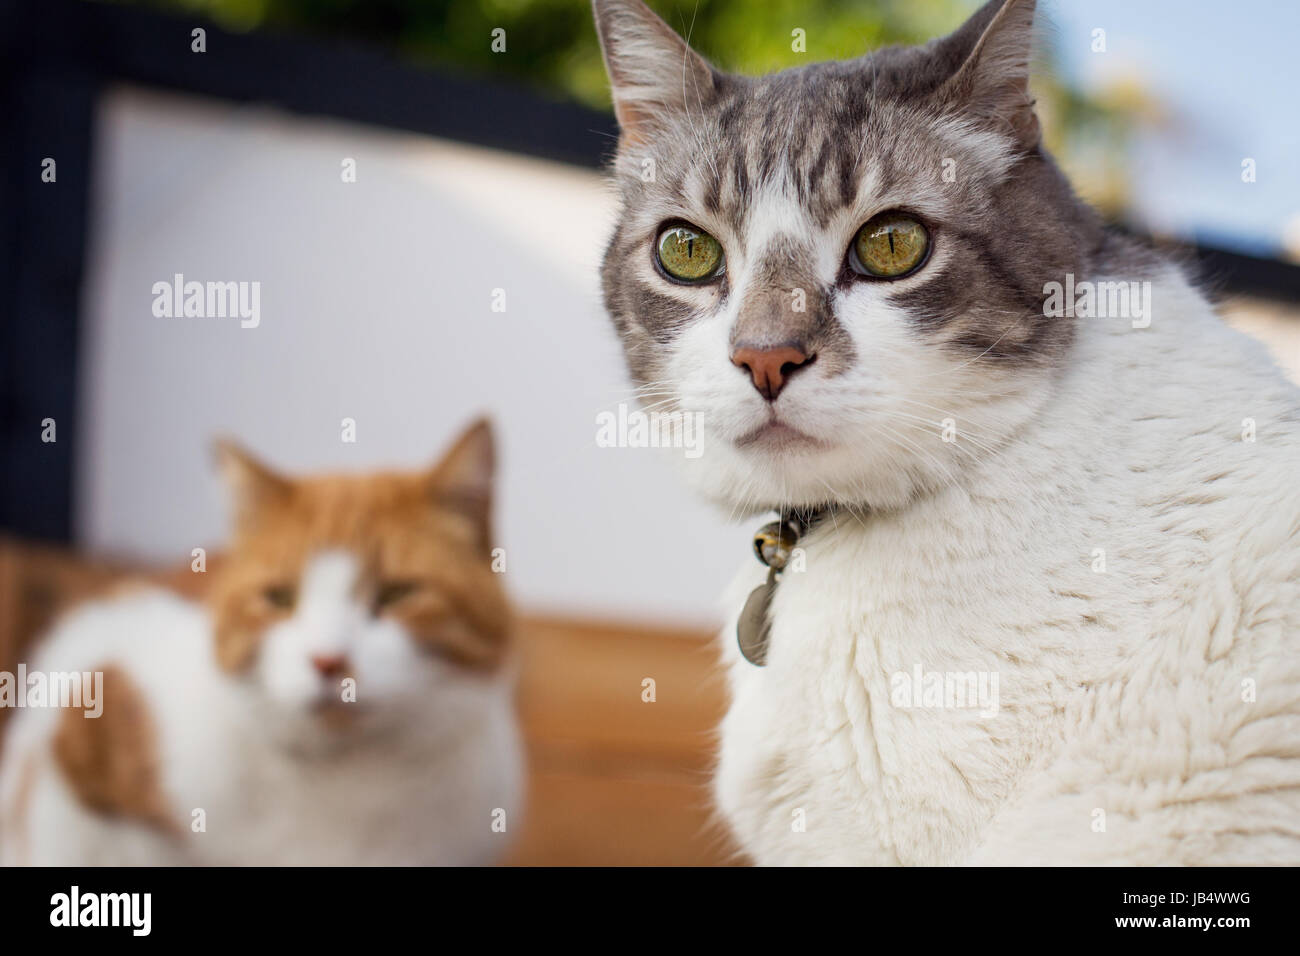 Close-up de gato blanco y gris y volviendo a mirar a la cámara con un gato naranja en segundo plano. Foto de stock